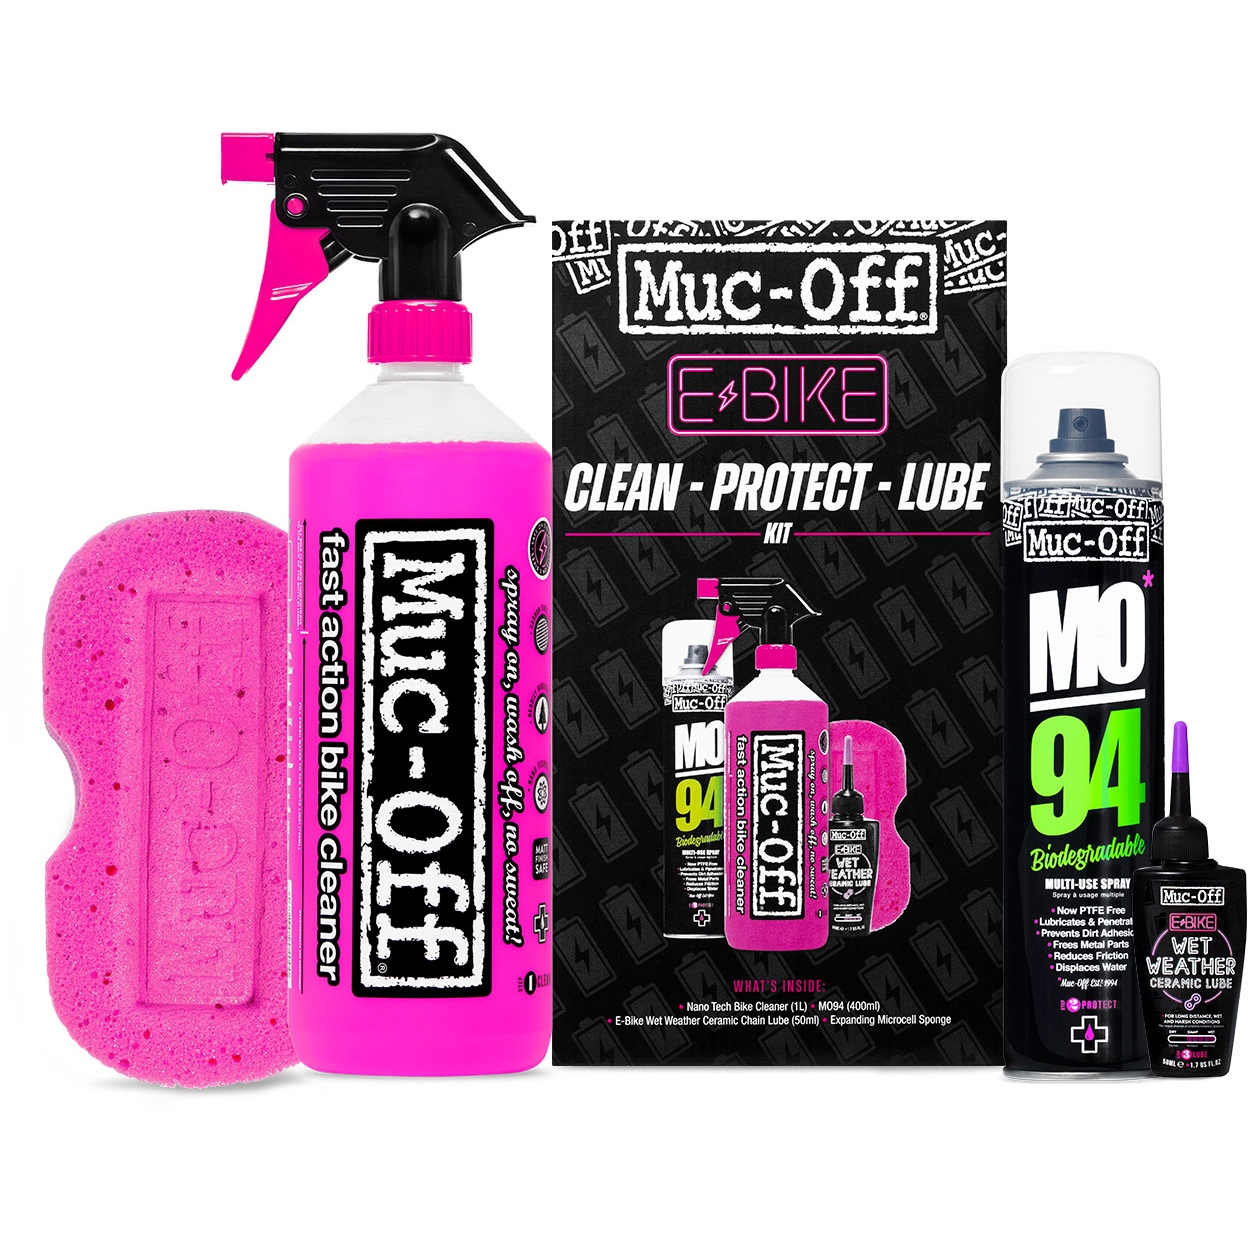 Produktbild von Muc-Off E-Bike Clean - Schutz &amp; Schmiermittel-Kit (Nasschmiermittel-Version) - schwarz